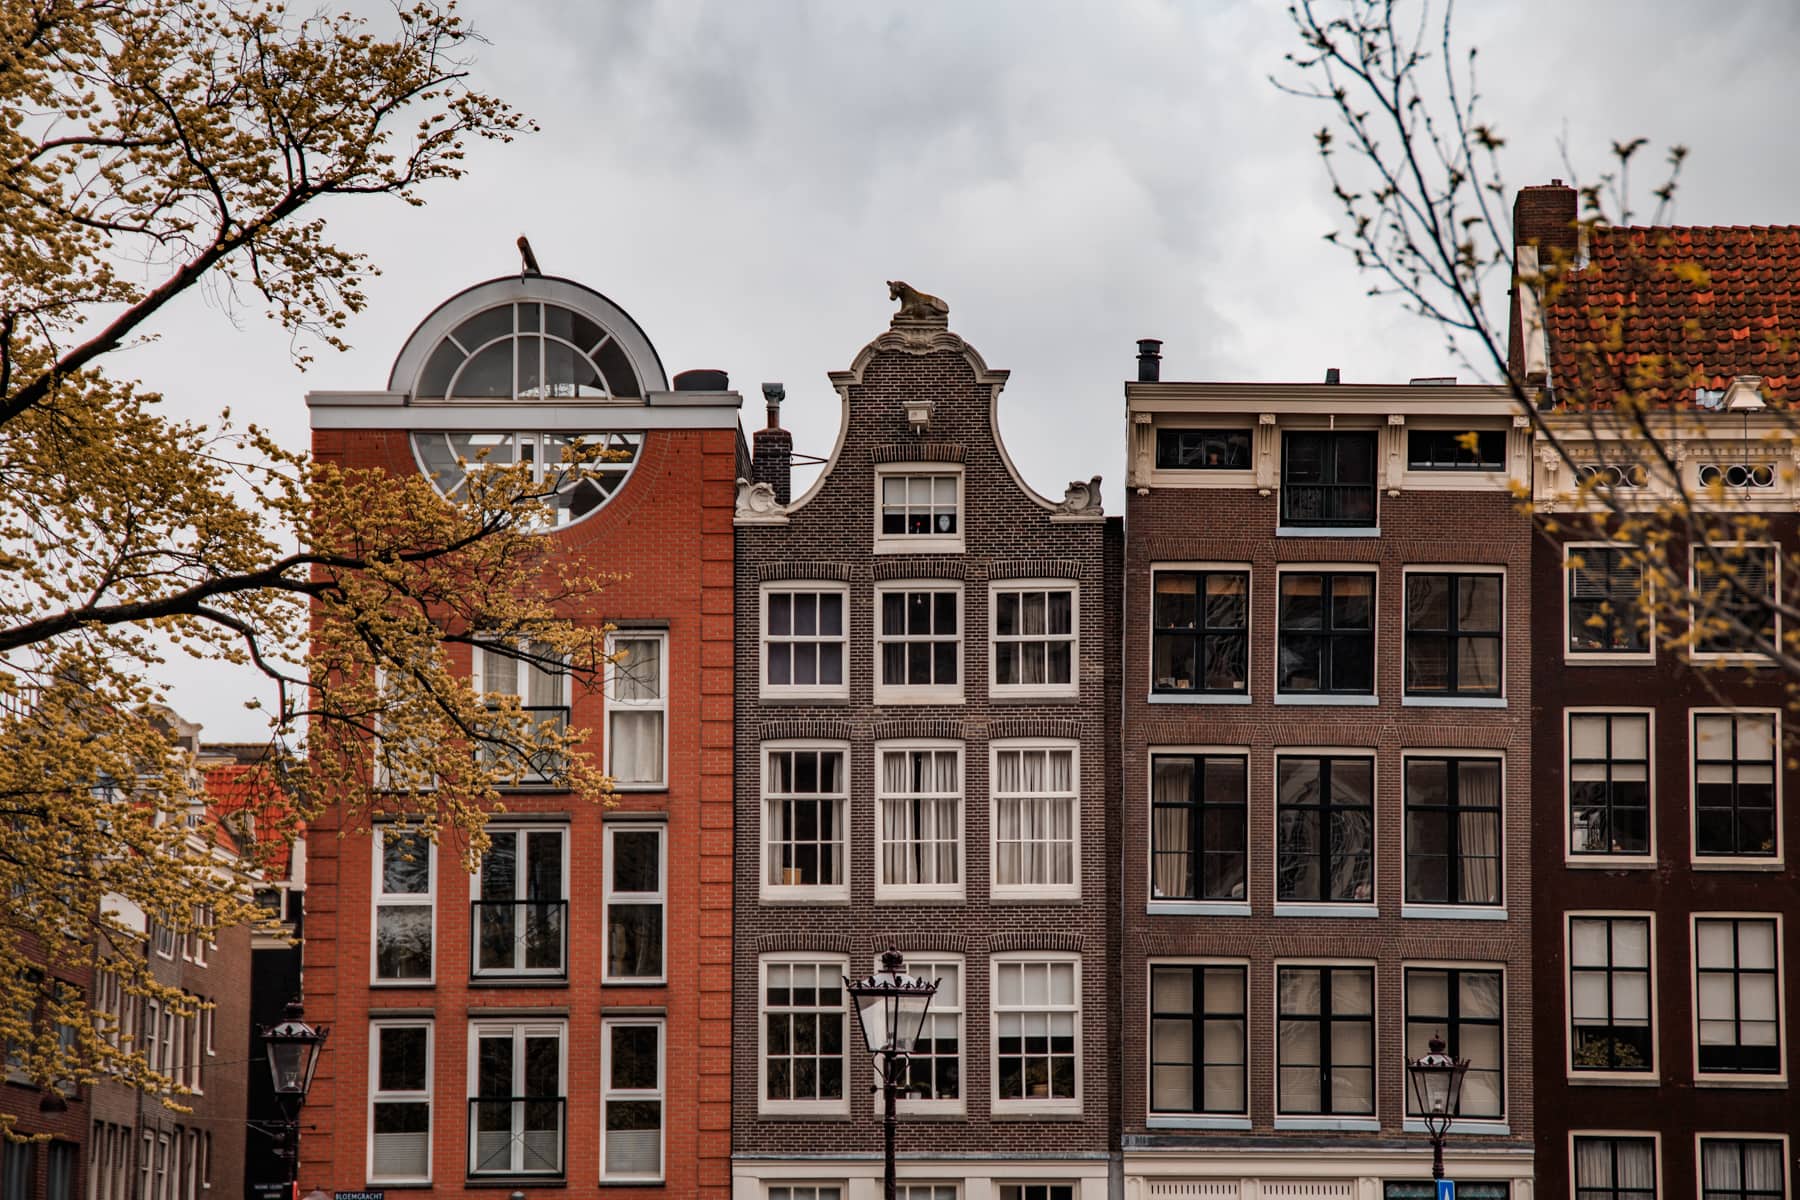 Amsterdam Guide - Die besten Restaurants & Aktivitäten in Holland